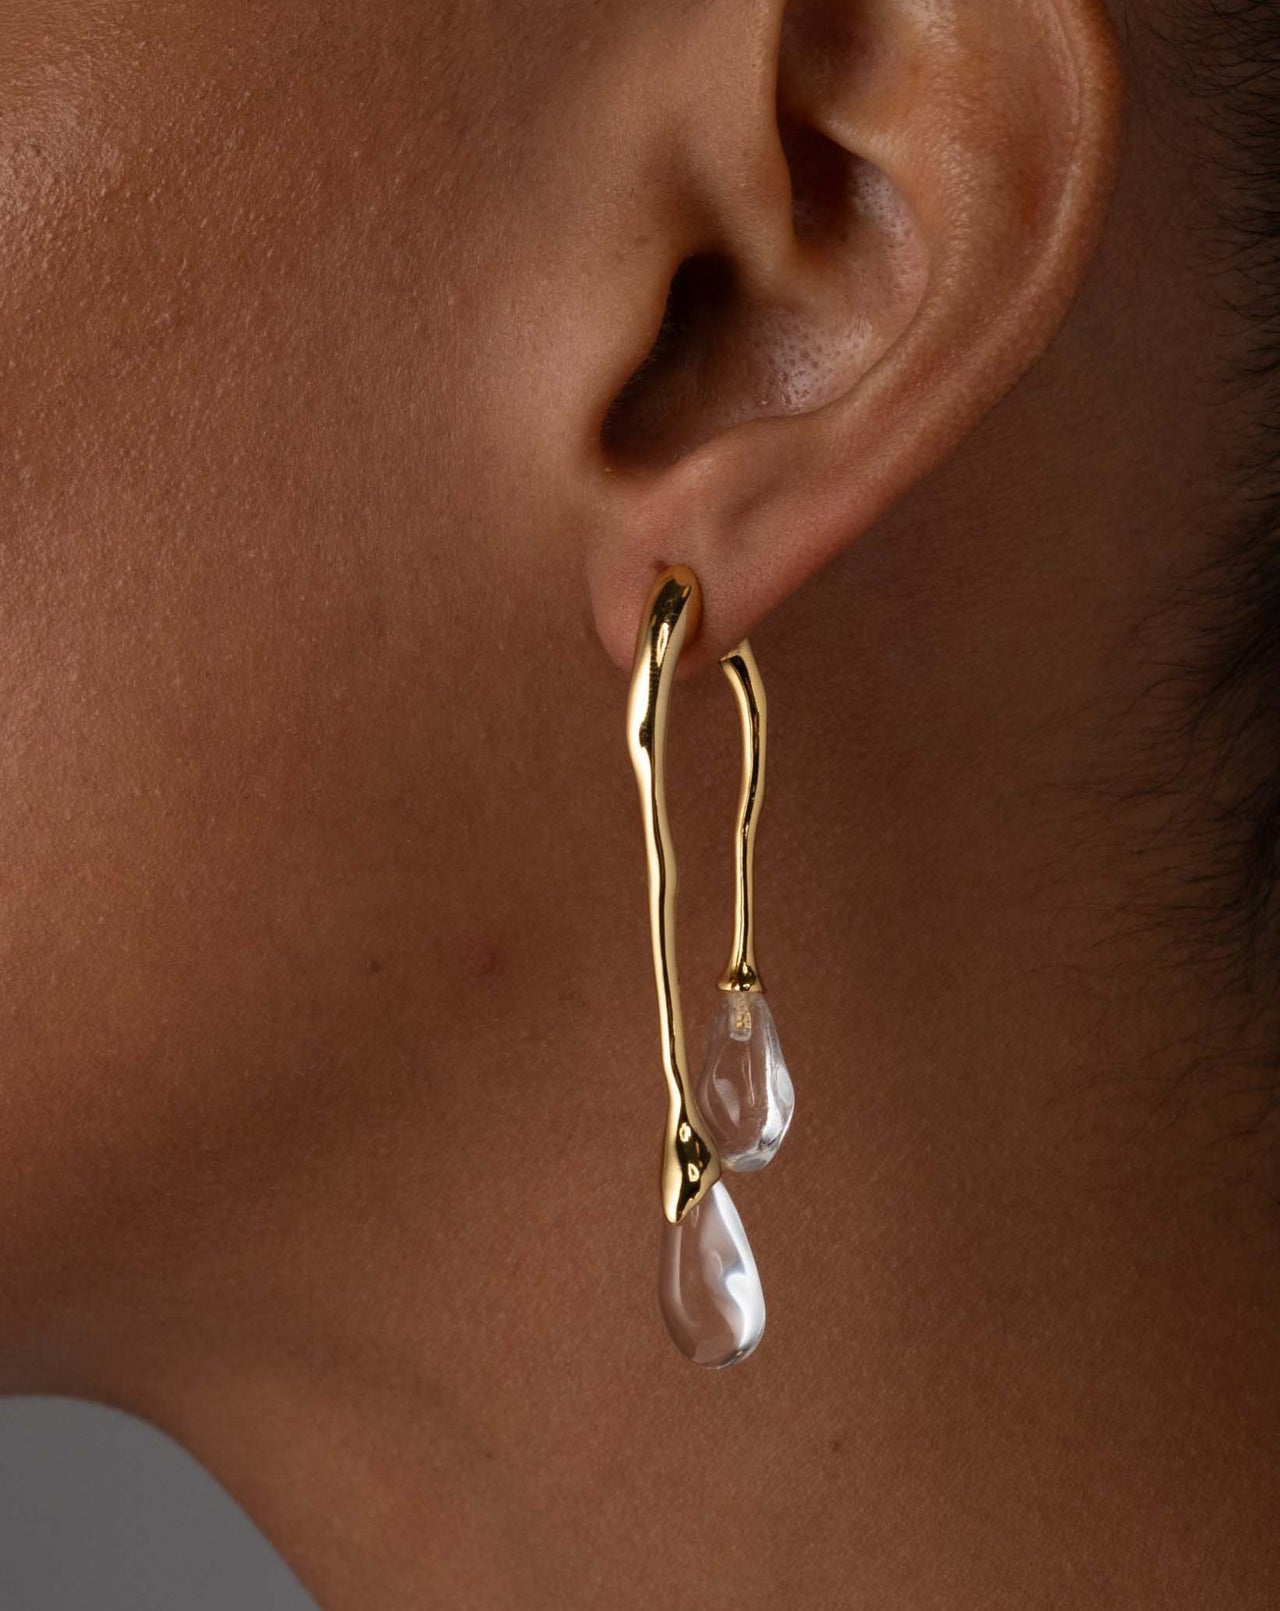 Alexis Bittar Molten Lucite Hoop Earrings - Gold/Clear